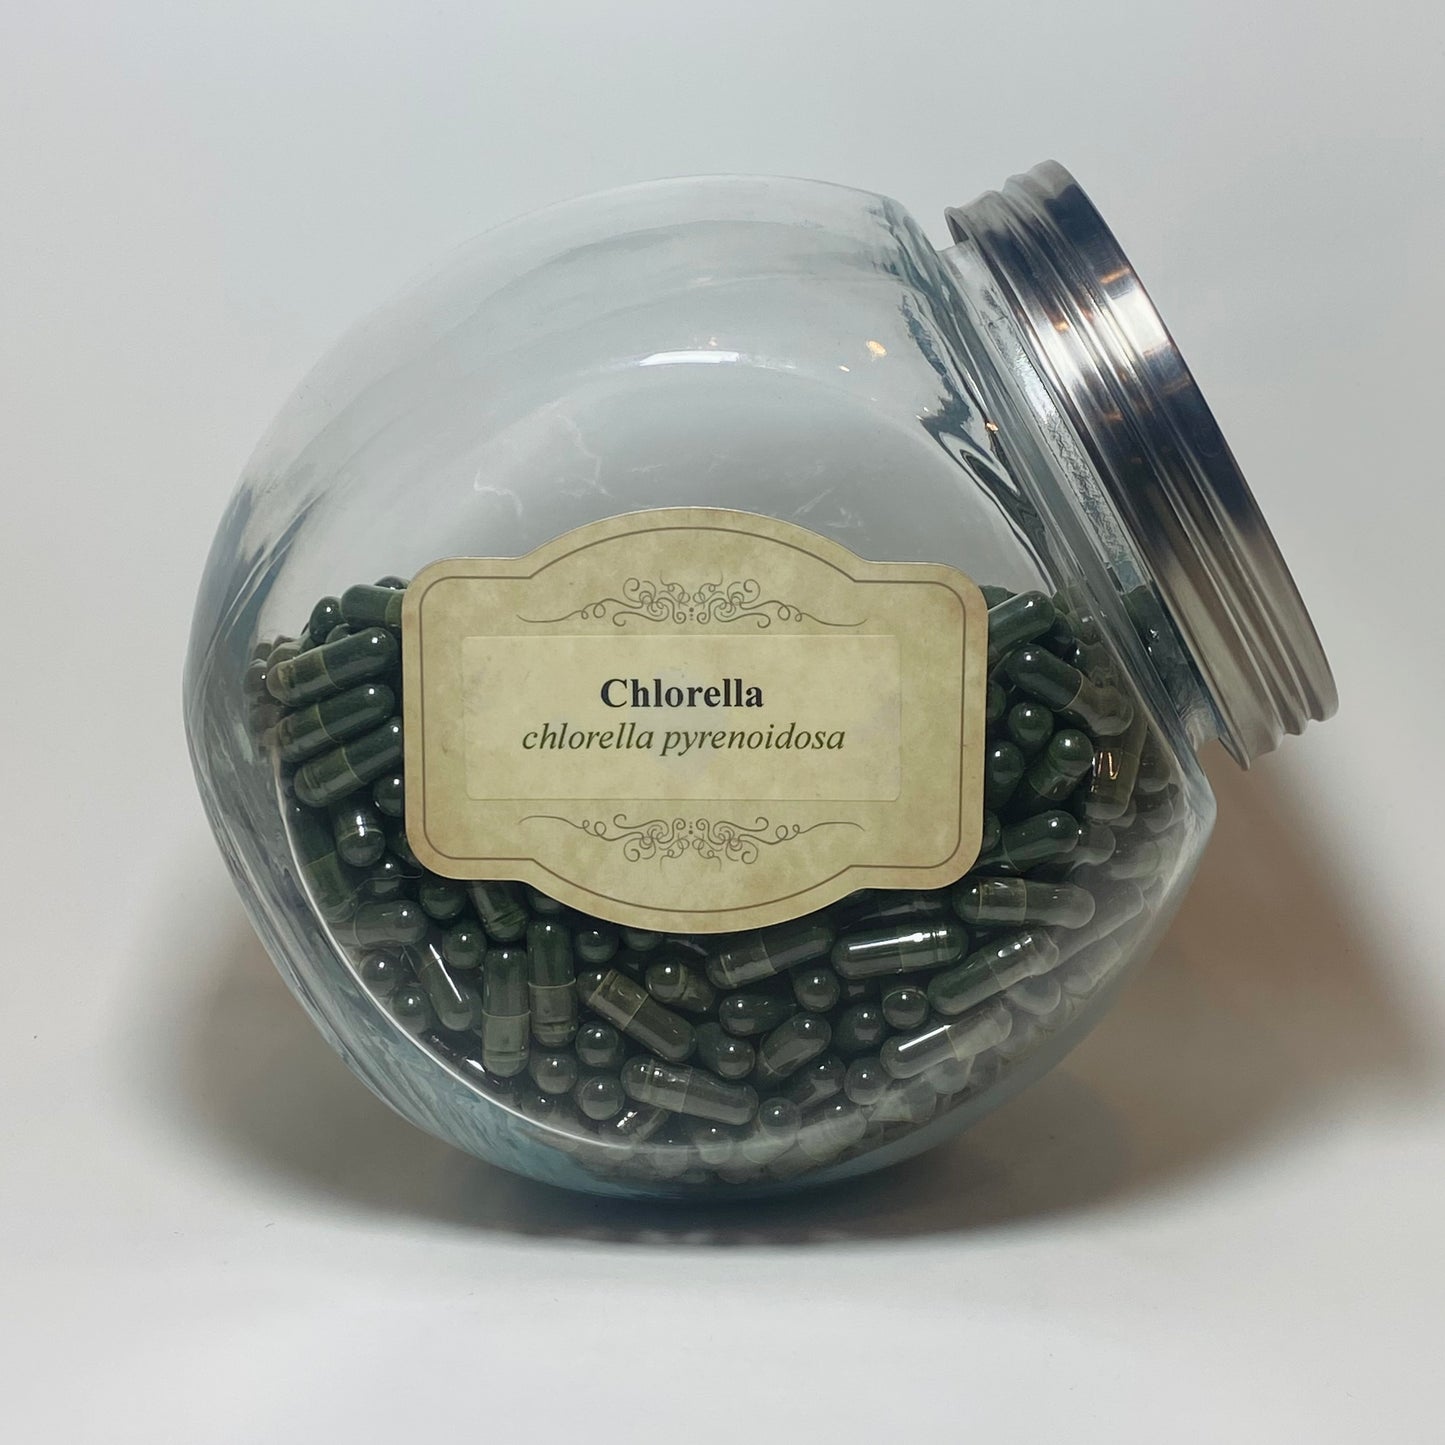 Chlorella Capsules (per gram)